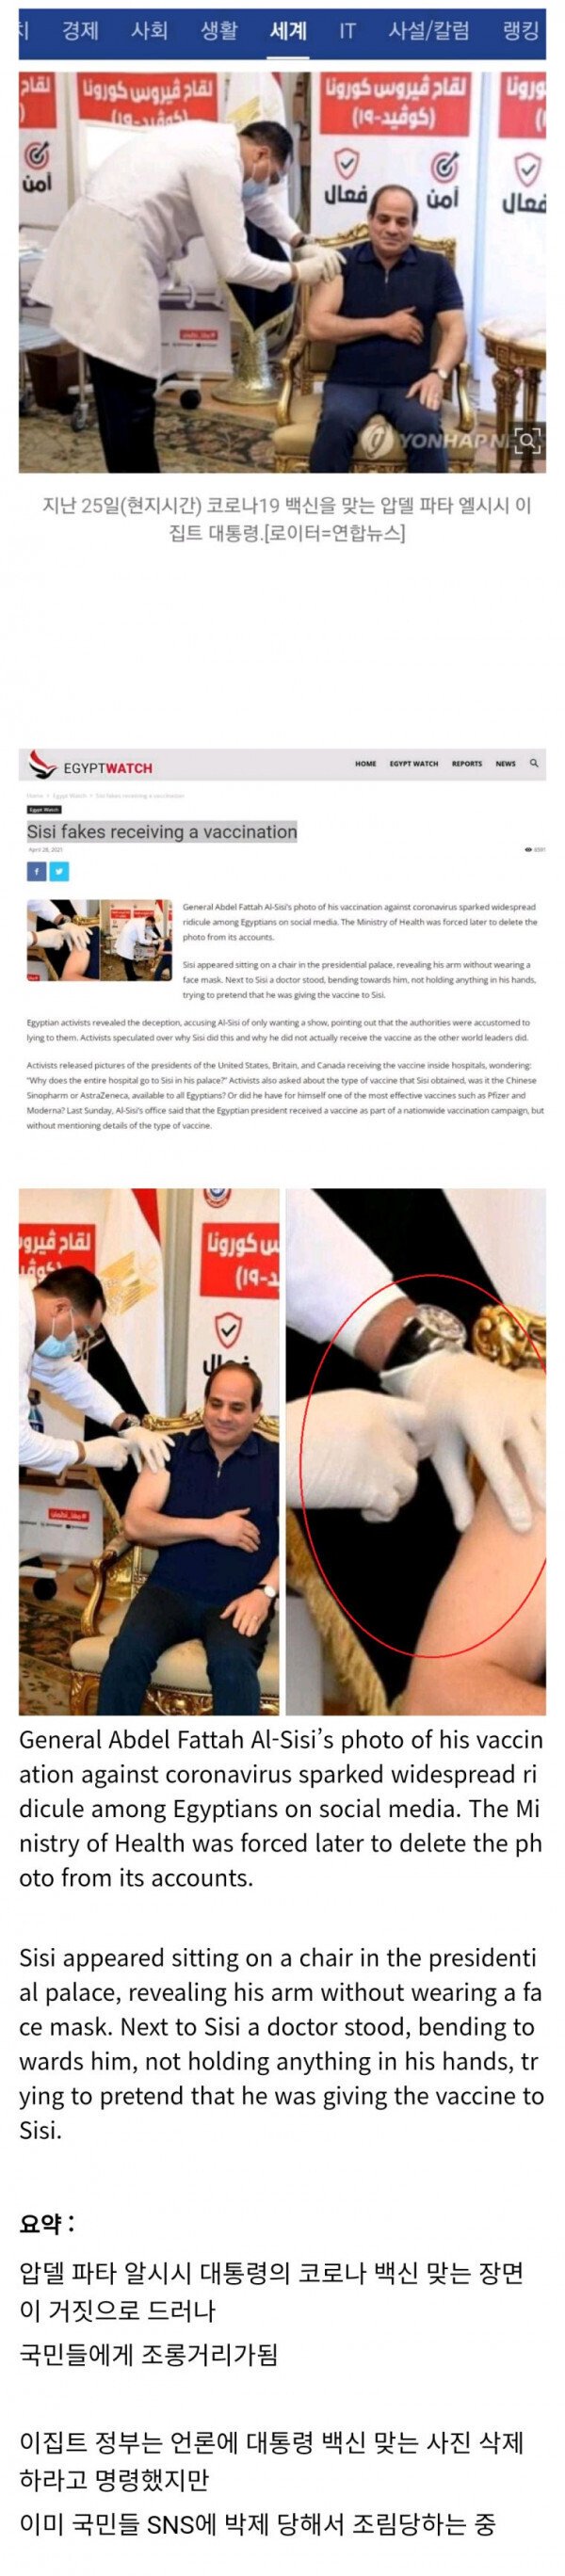 투명 백신 접종한 이집트 대통령